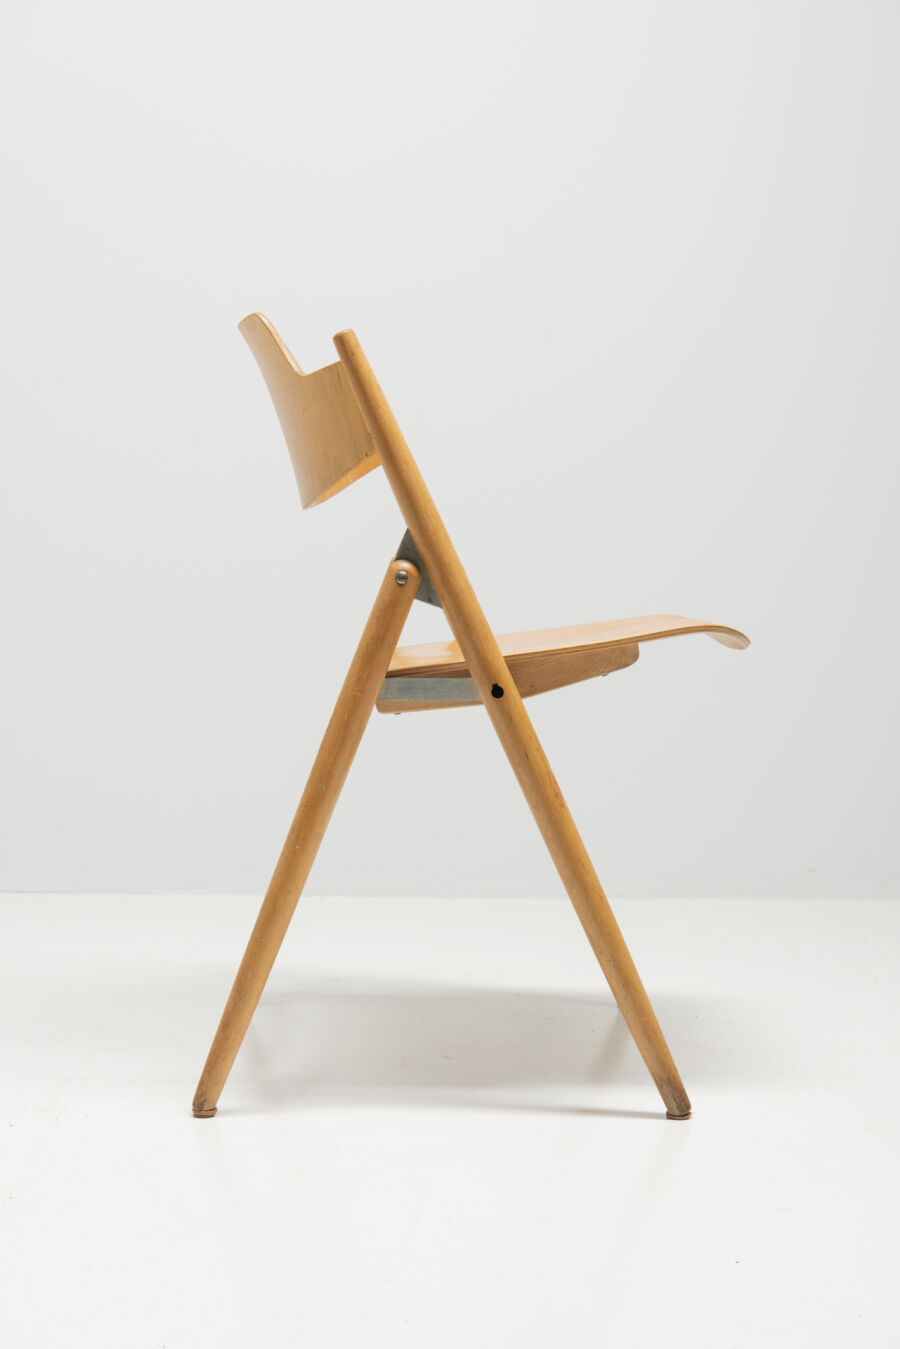 2950egon-eiermann6-folding-chairs-5